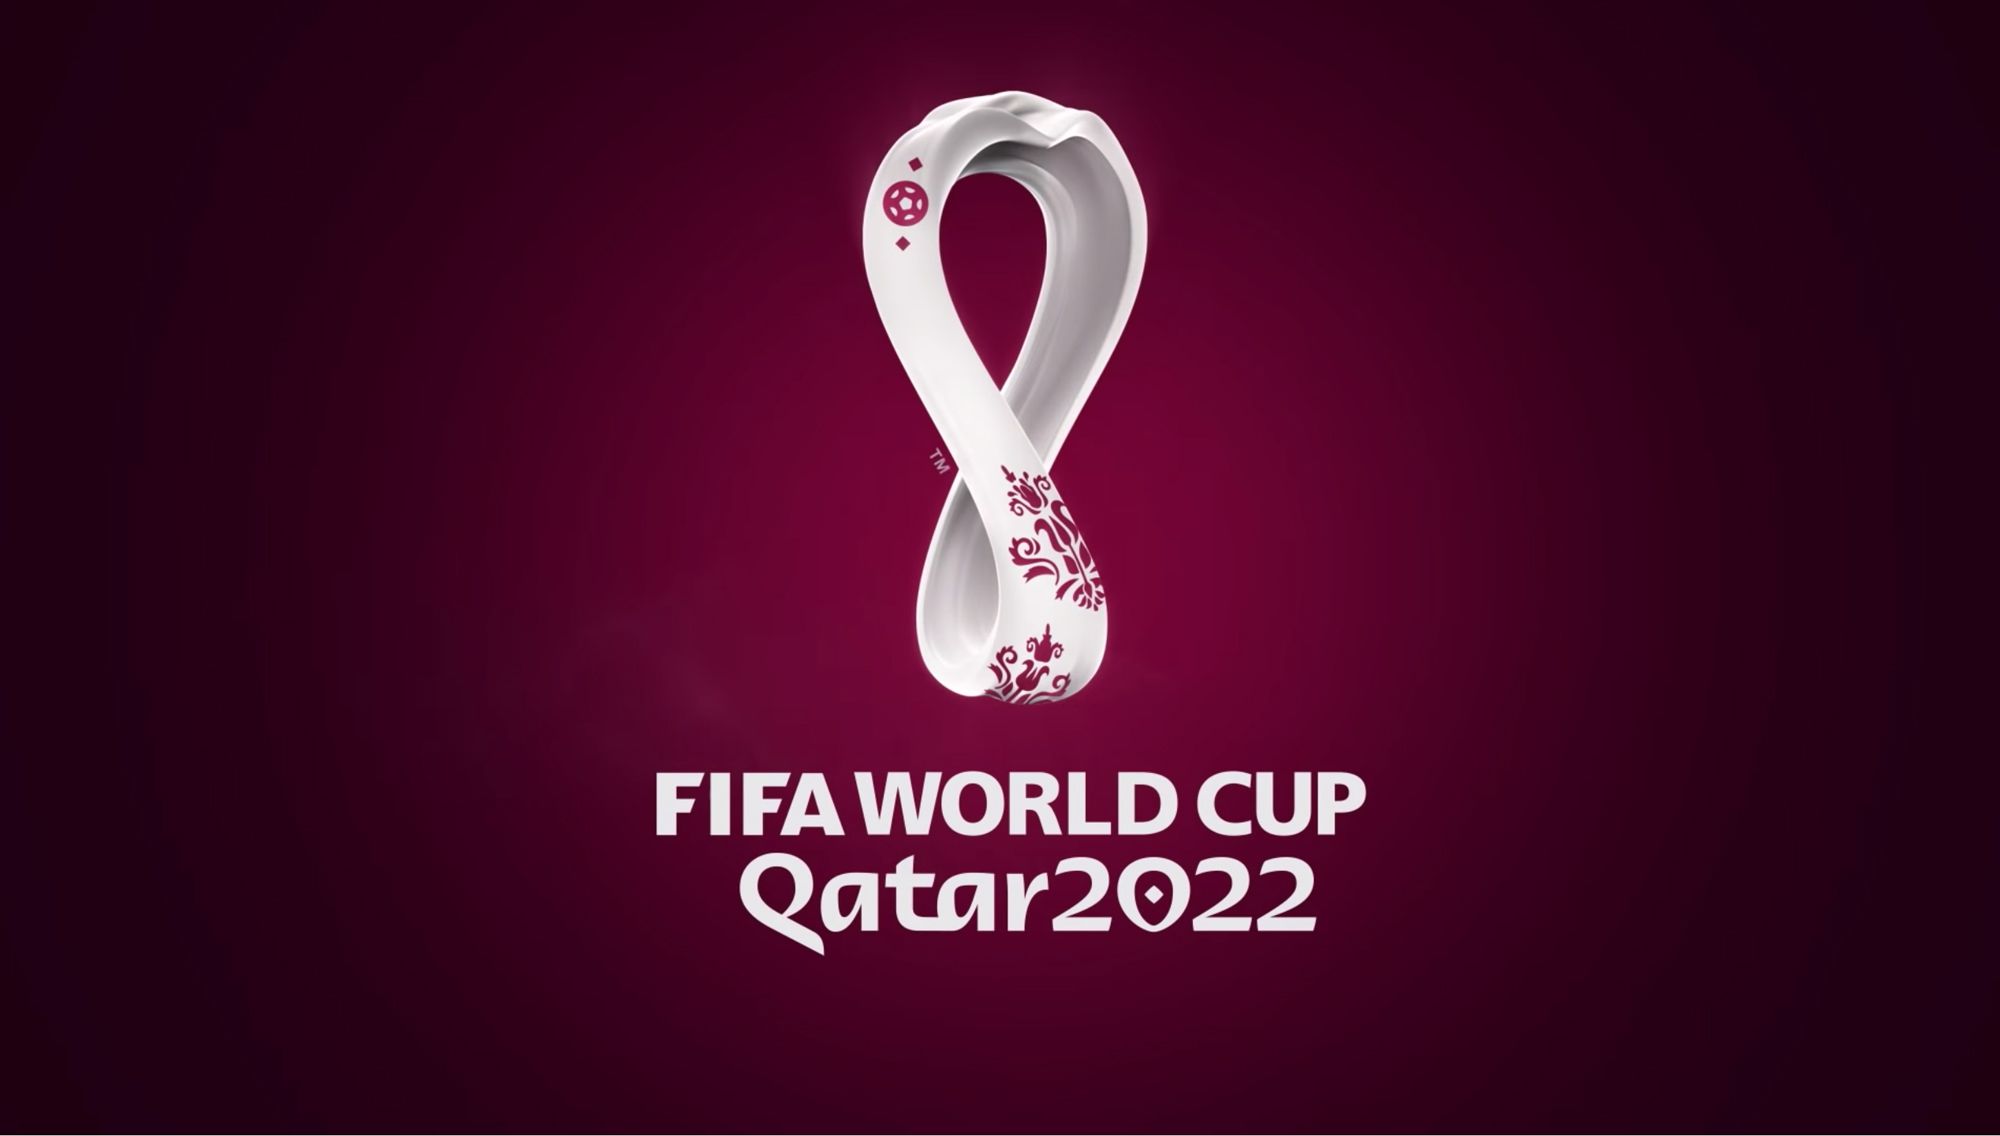 https://media.cnn.com/api/v1/images/stellar/prod/190903171331-qatar-world-cup-emblem.jpg?q=w_2000,h_1136,x_0,y_0,c_fill